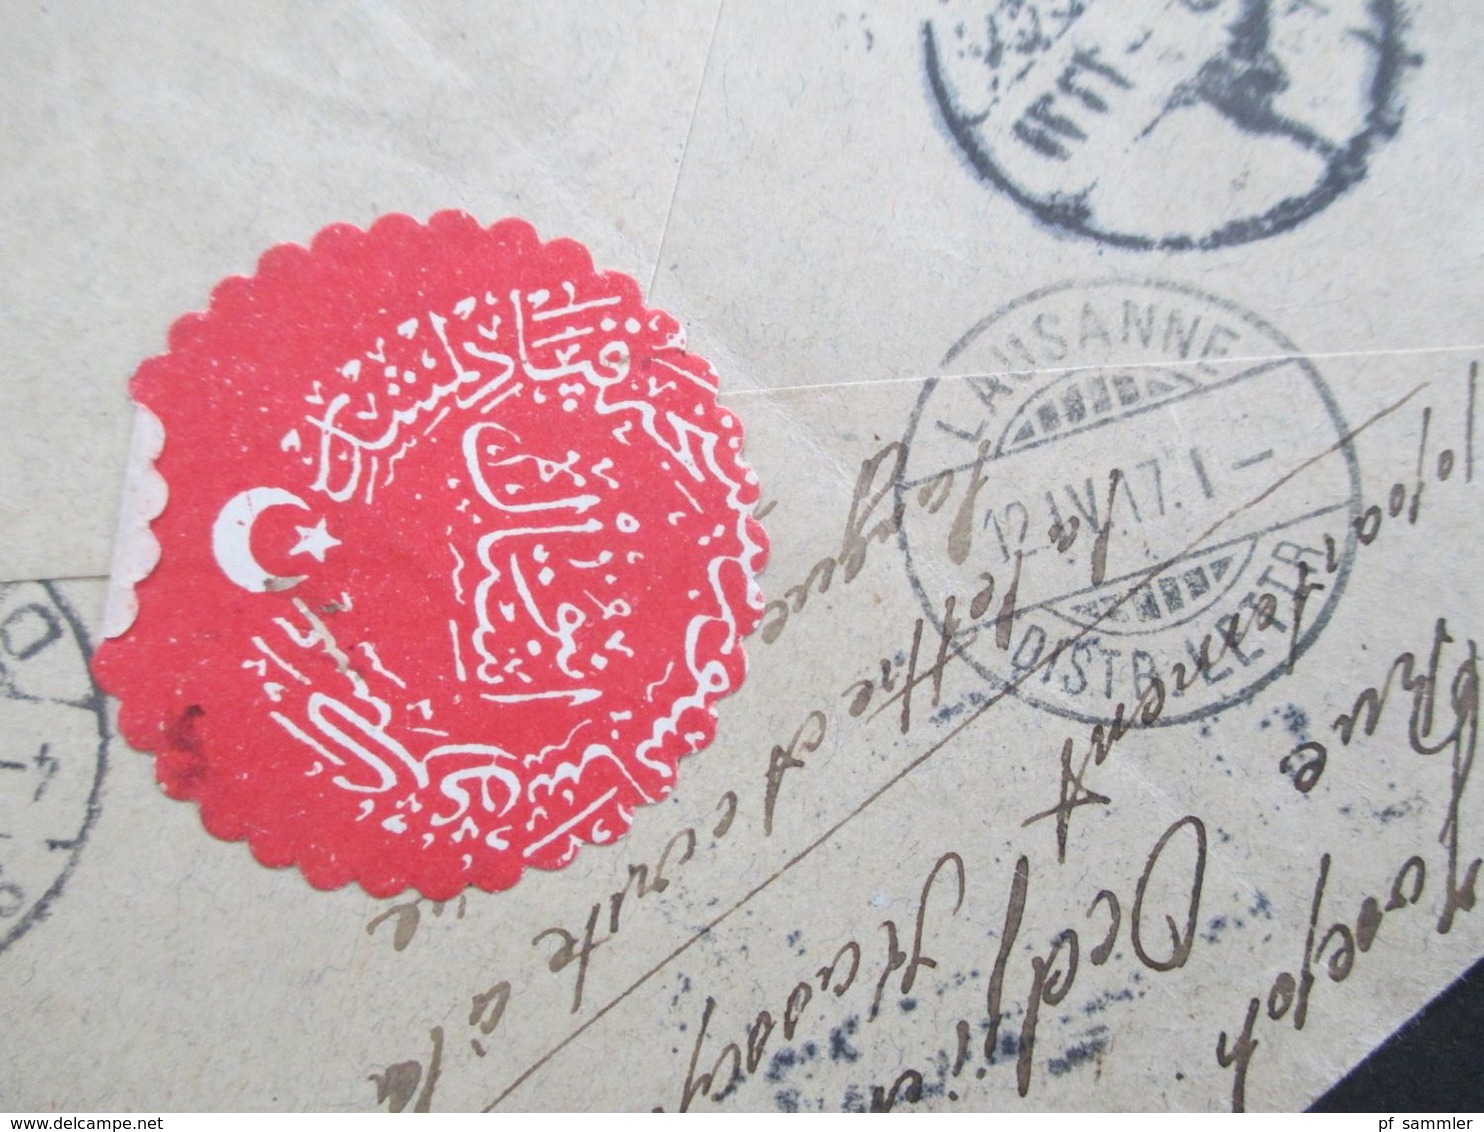 Türkei 1917 Einschreiben ?! 2 Marken mit Aufdruck auf Brief in die Schweiz mit rotem Papiersiegel!!